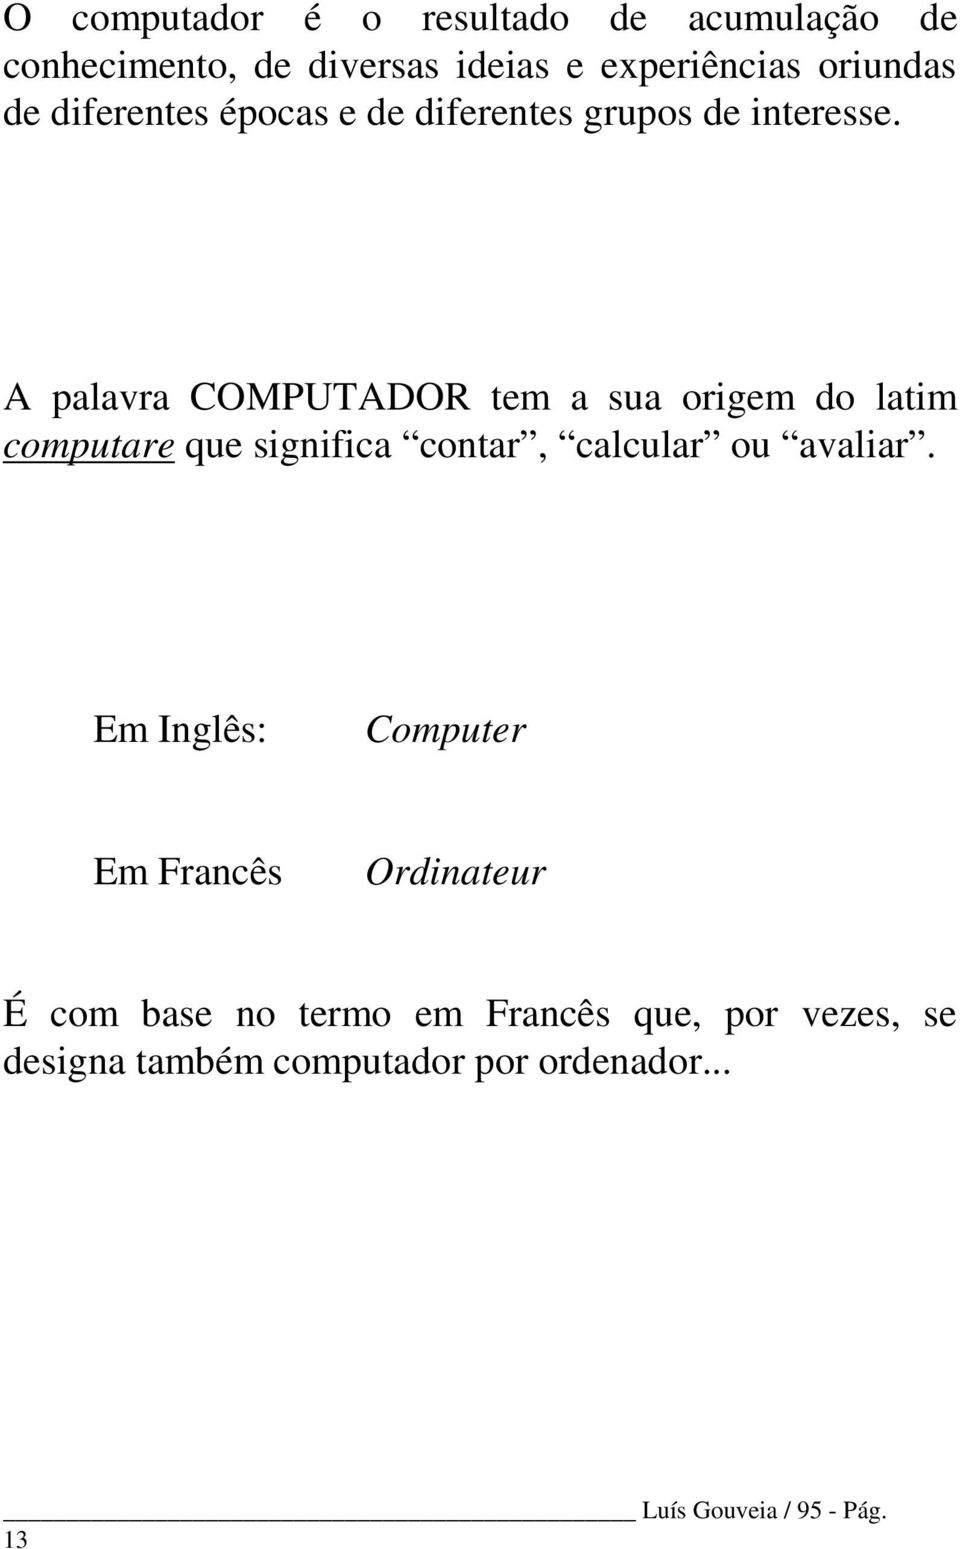 A palavra COMPUTADOR tem a sua origem do latim computare que significa contar, calcular ou avaliar.